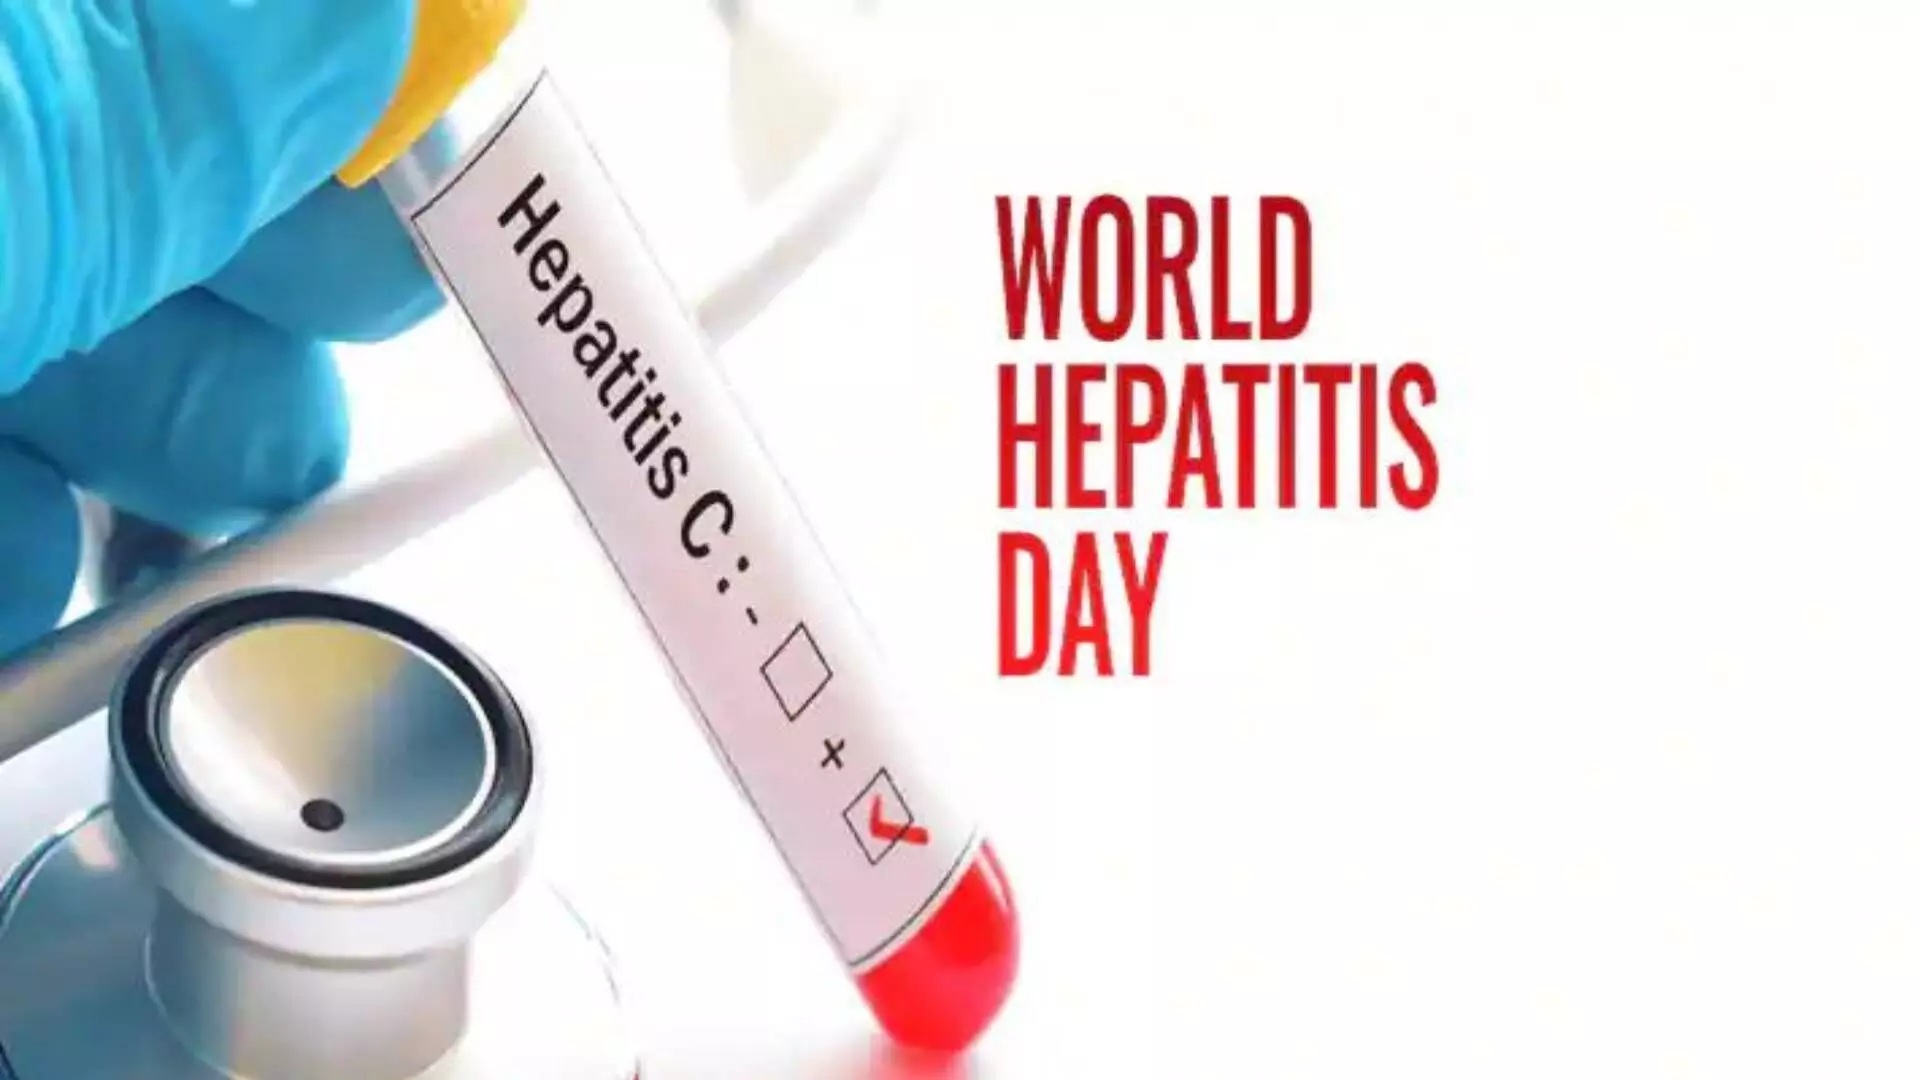 World Hepatitis Day 2021 : दरवर्षी लाखो लोकांचा बळी घेणारा हिपॅटायटिस रोग काय आहे?